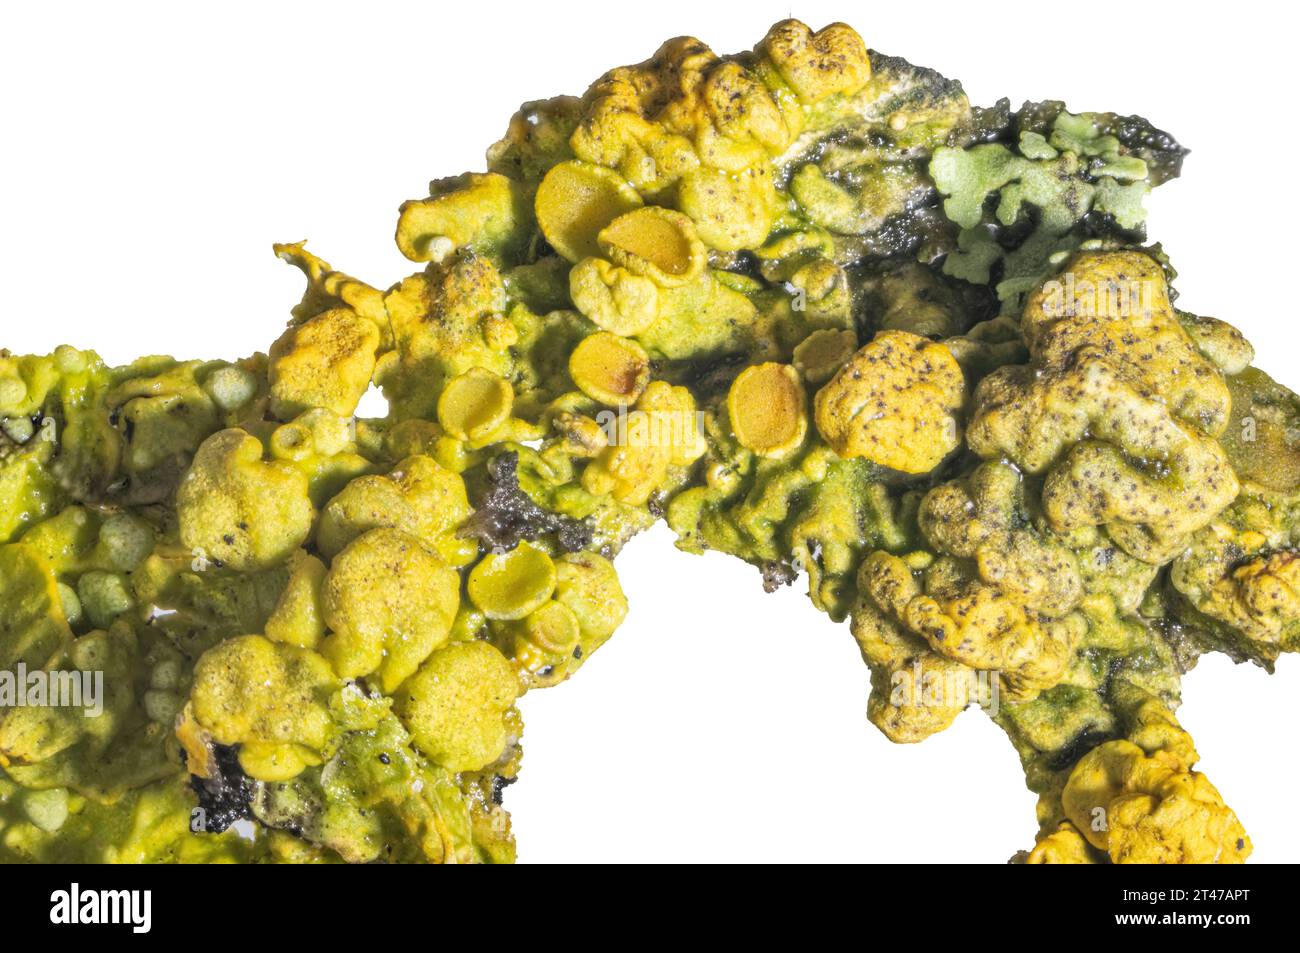 Crustose lichen, Xanthoria parietina, with a lichenicolous fungus, Telogalla olivieri, collected from a limestone wall Stock Photo